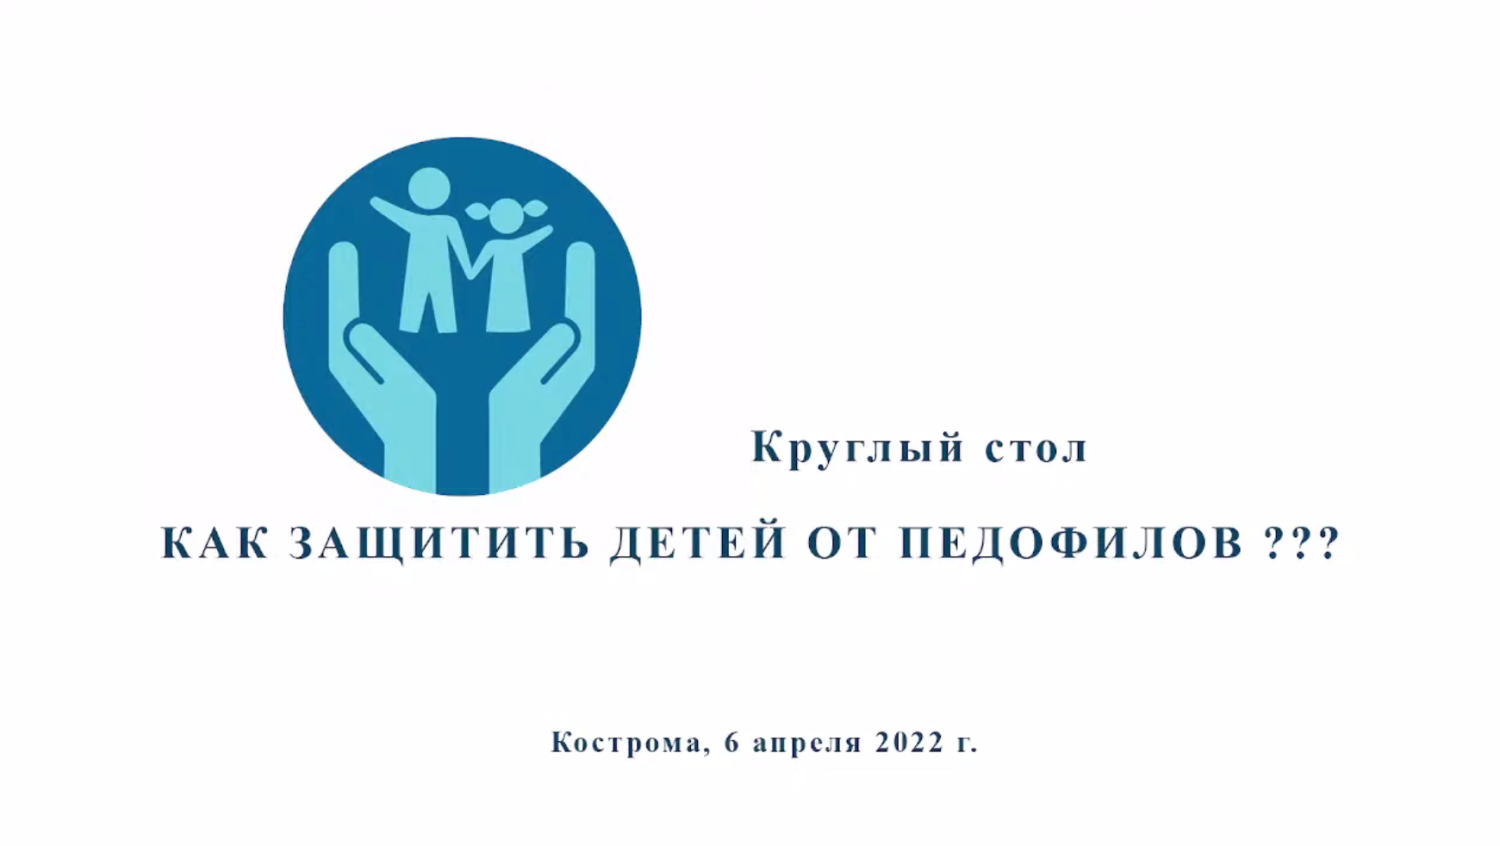 6 апреля Костромские общественники обсудили тему защиты детей от педофилов